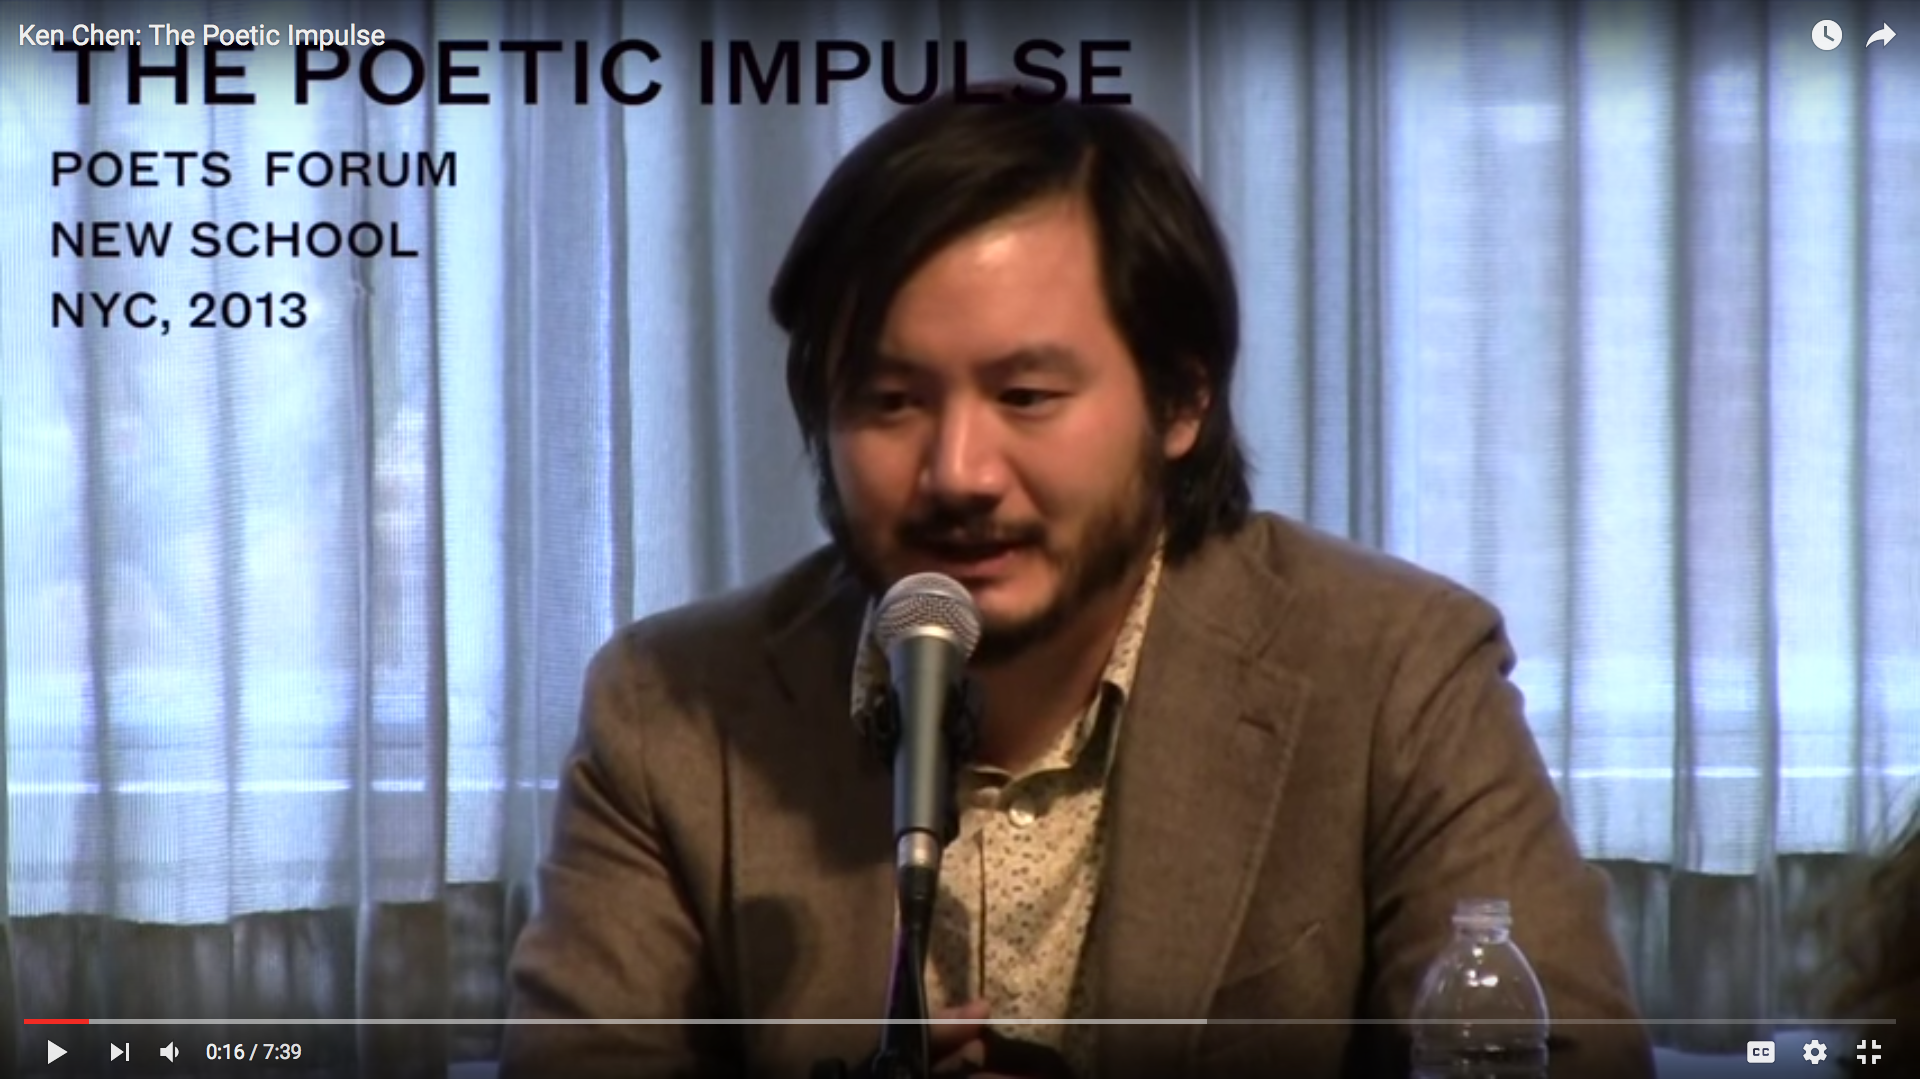 Ken Chen: The Poetic Impulse